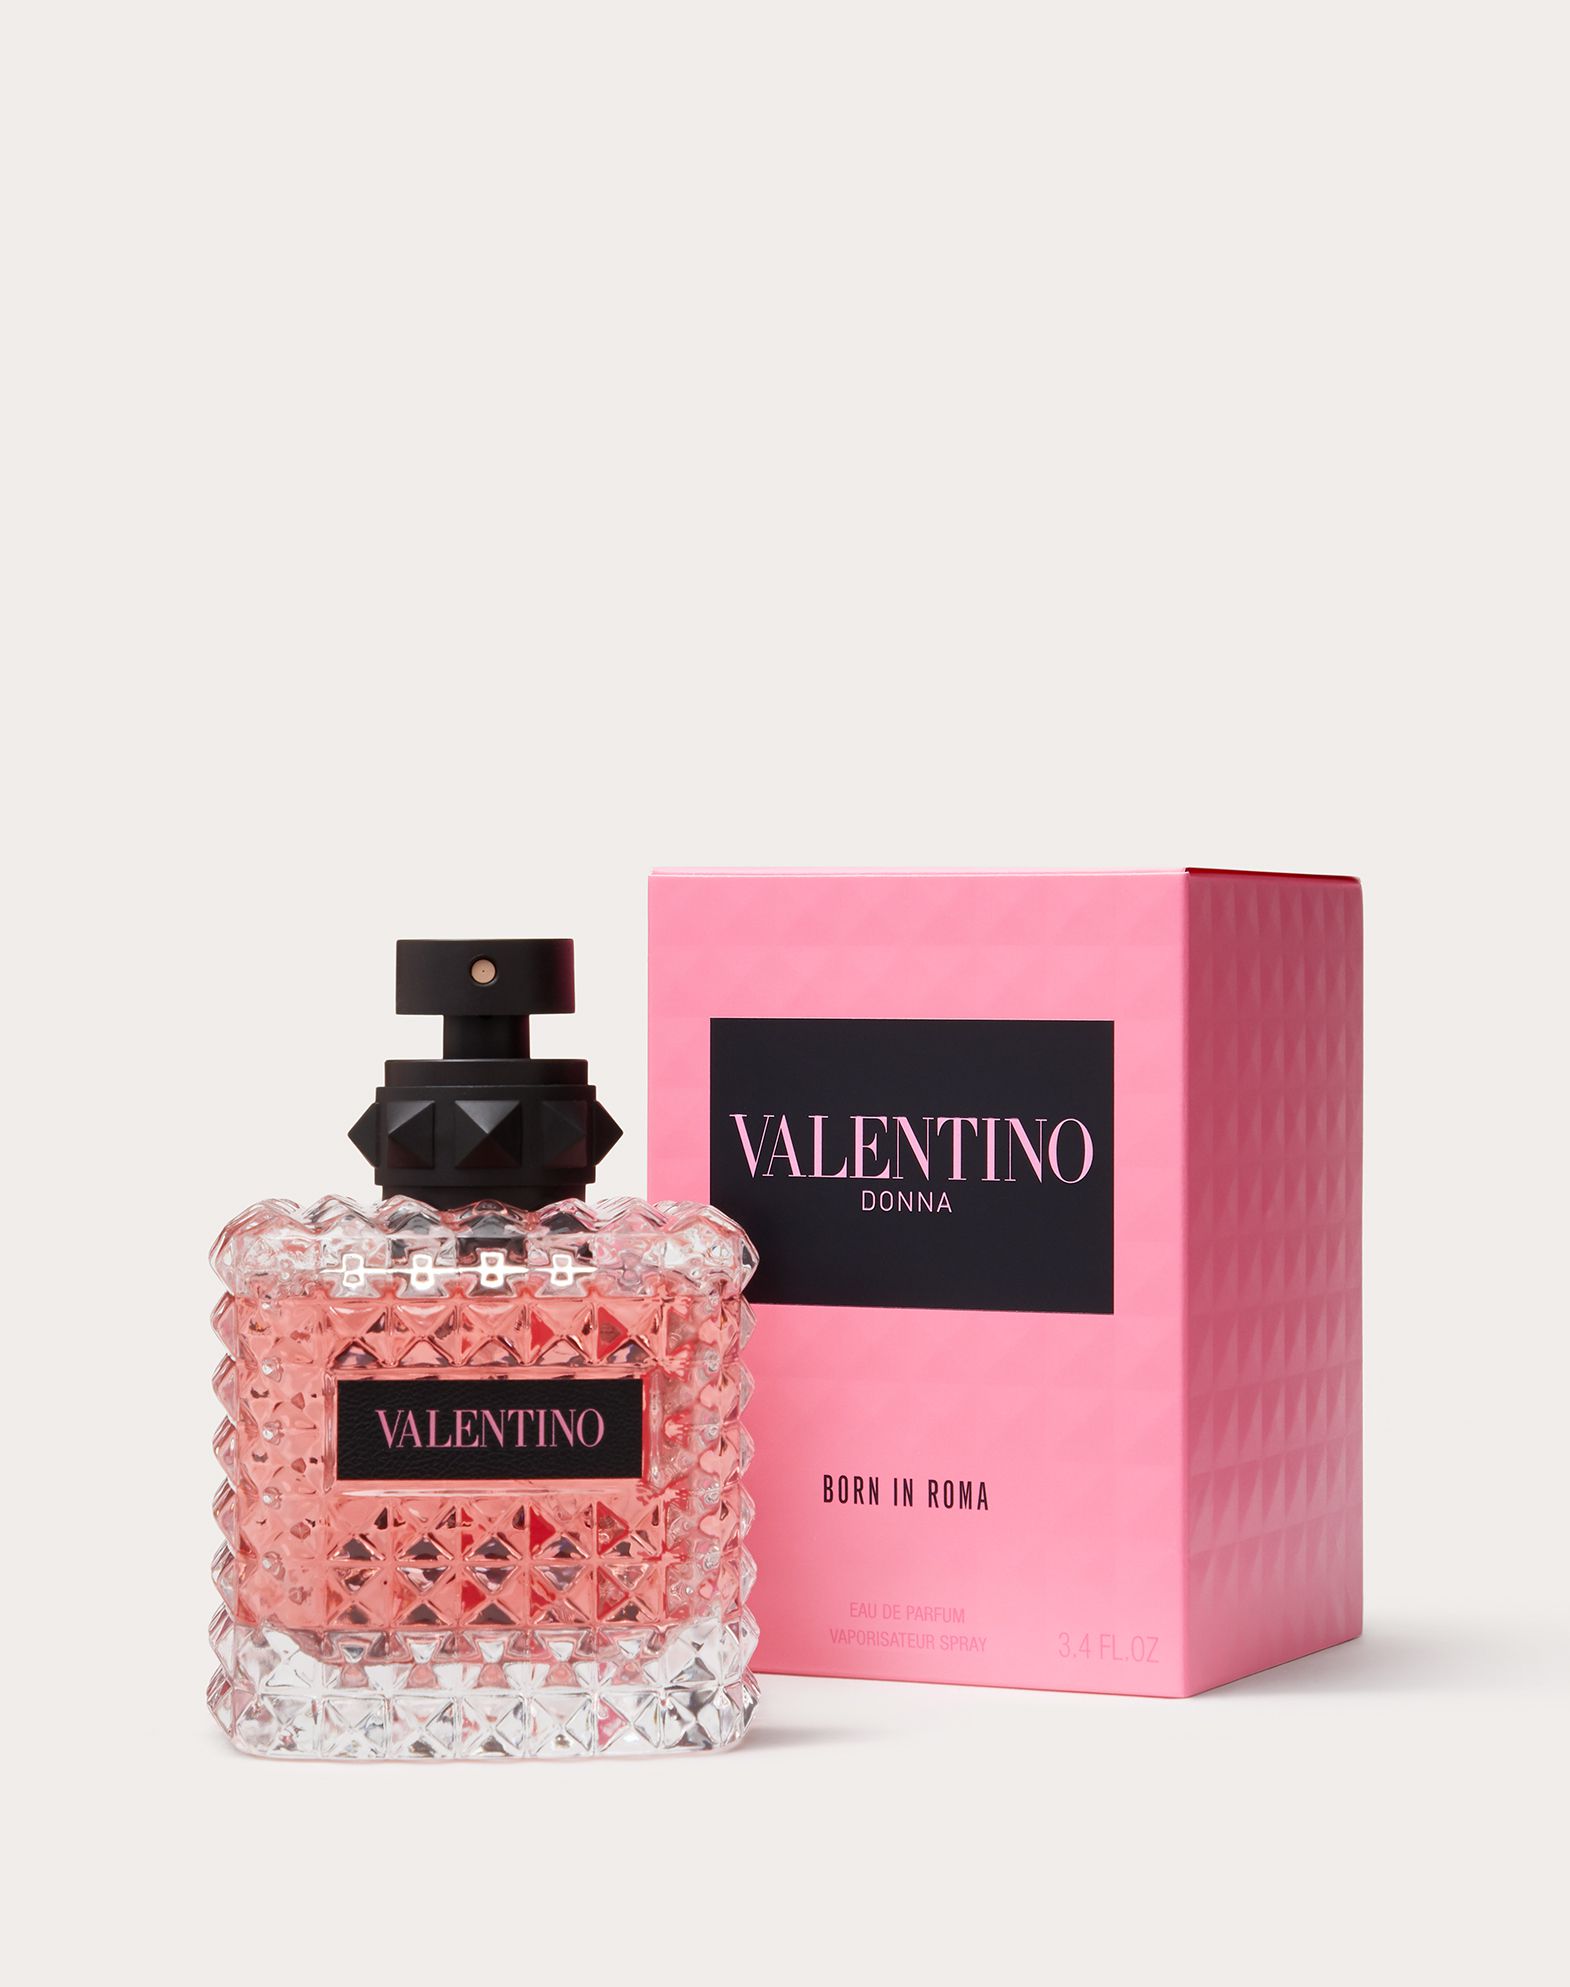 VALENTINO DONNA BORN IN ROMA EAU DE PARFUM 100ML for Woman | Valentino ...